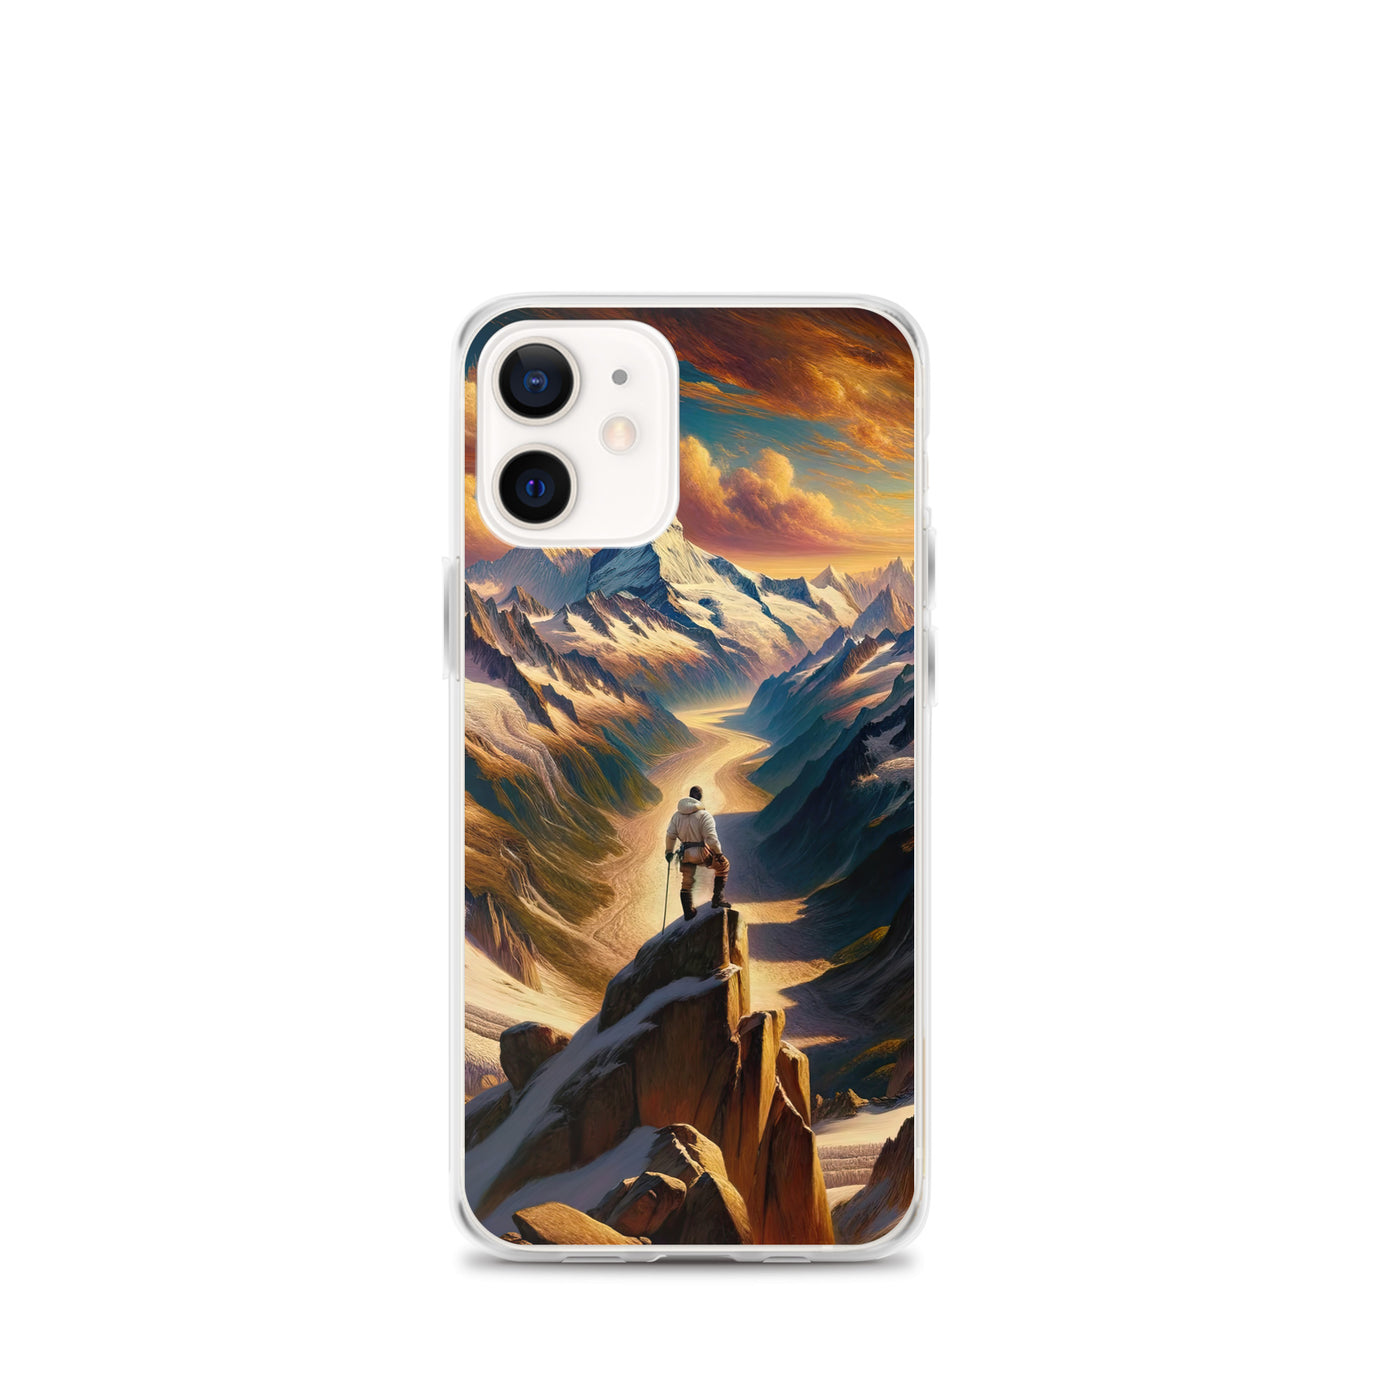 Ölgemälde eines Wanderers auf einem Hügel mit Panoramablick auf schneebedeckte Alpen und goldenen Himmel - iPhone Schutzhülle (durchsichtig) wandern xxx yyy zzz iPhone 12 mini